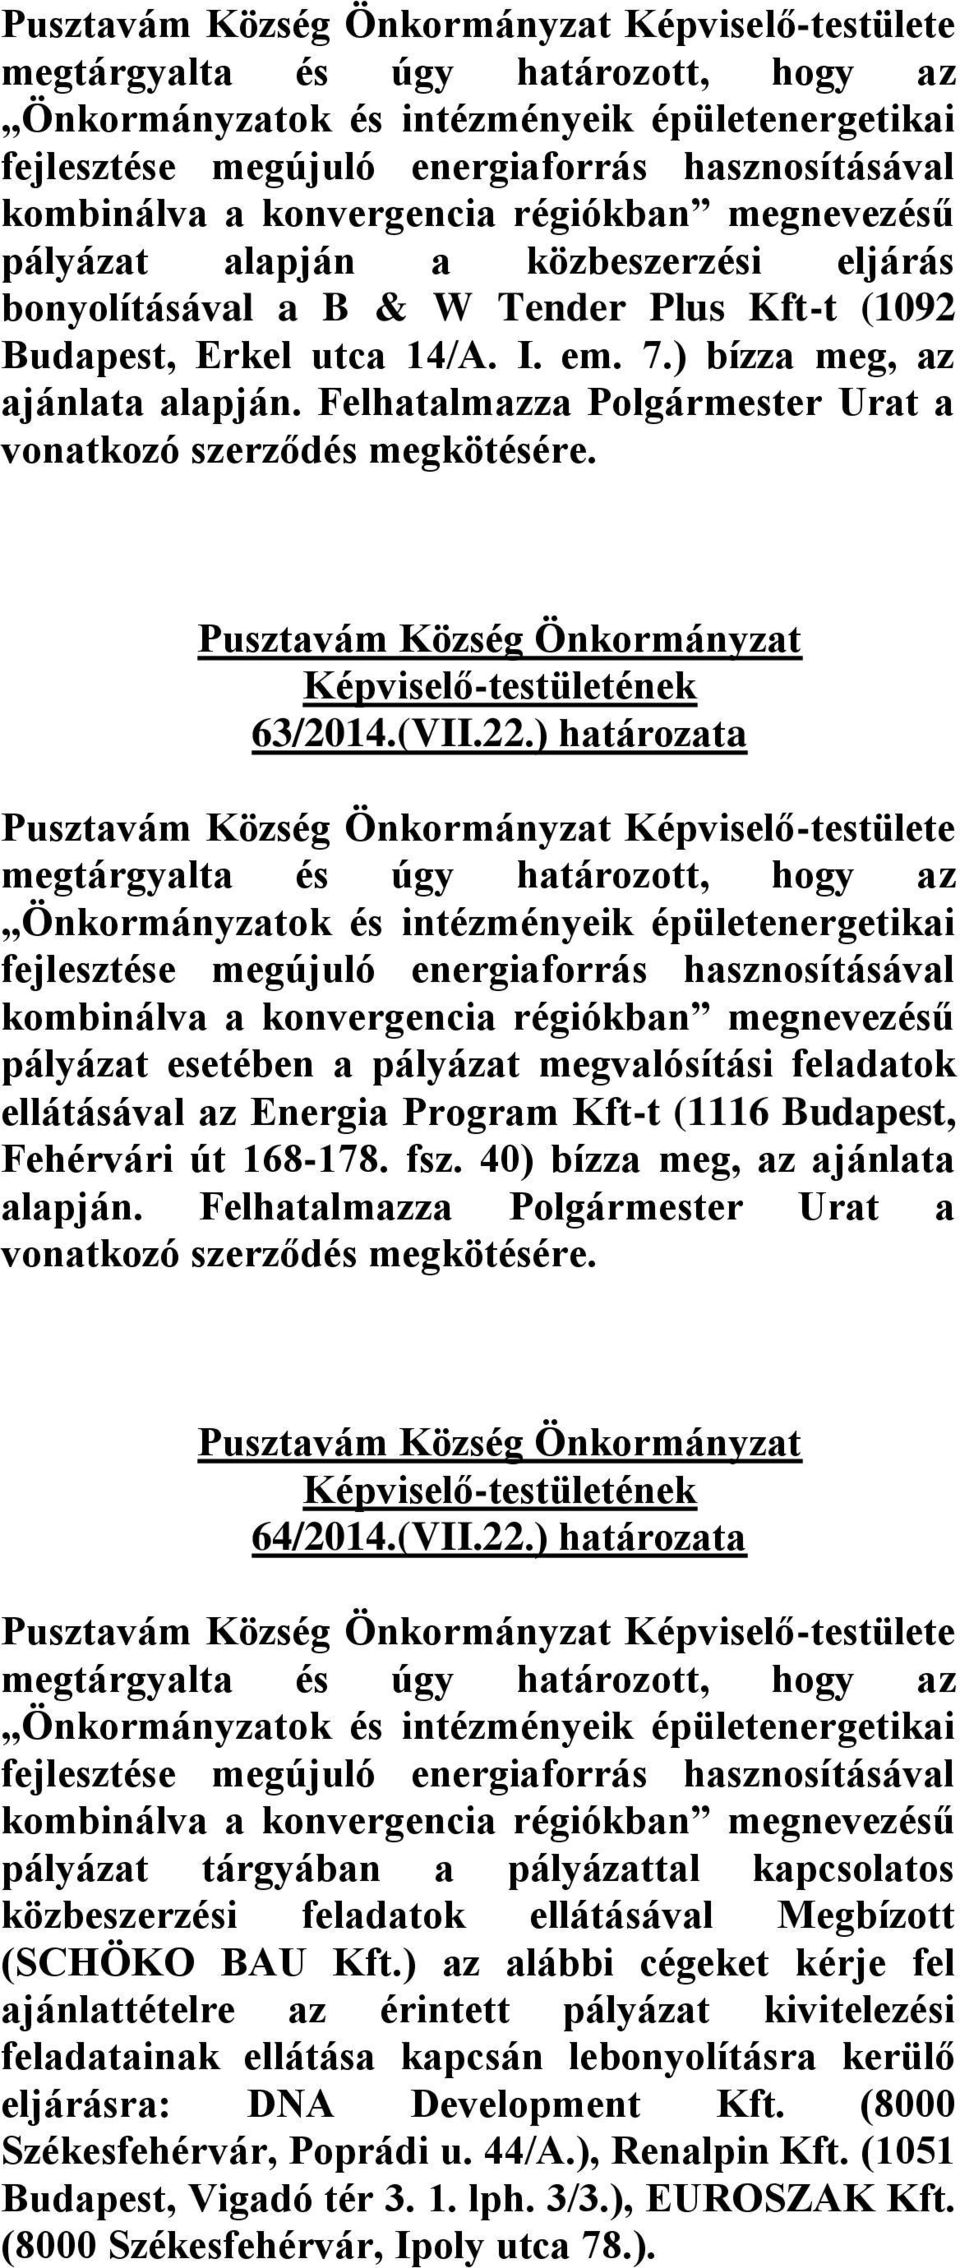 ) határozata pályázat esetében a pályázat megvalósítási feladatok ellátásával az Energia Program Kft-t (1116 Budapest, Fehérvári út 168-178. fsz. 40) bízza meg, az ajánlata alapján.